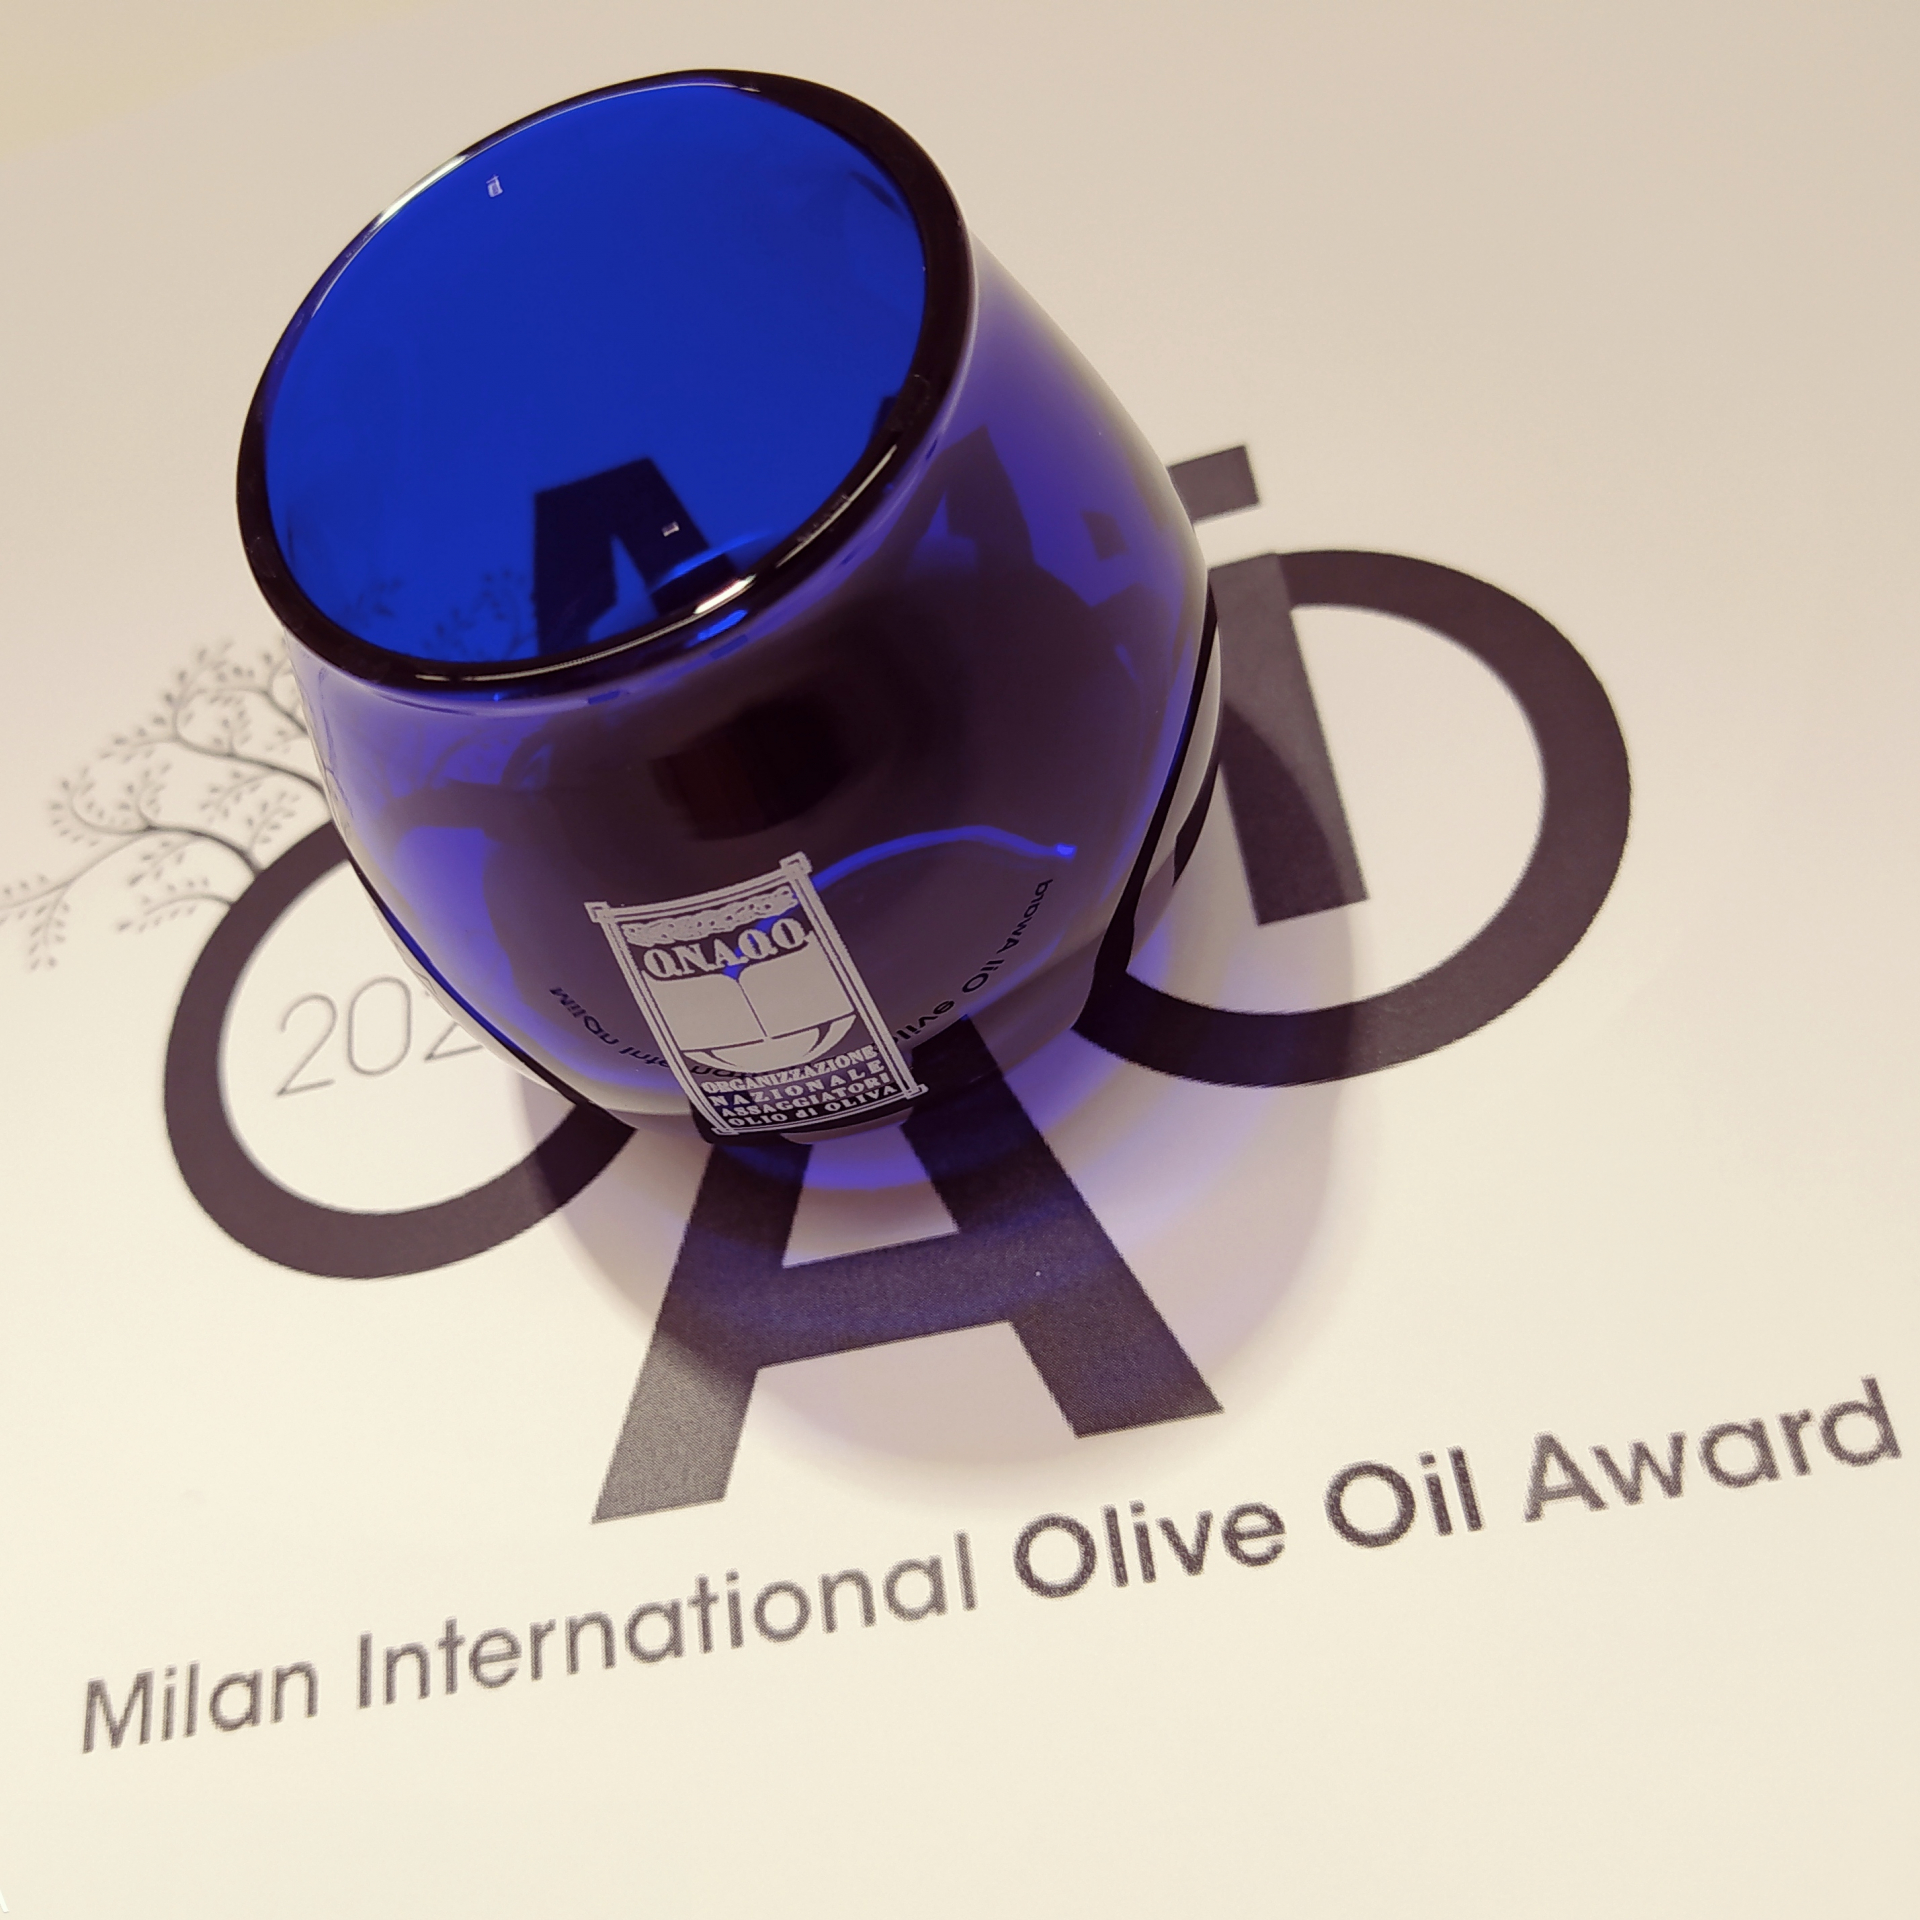 Come partecipare al concorso MIOOA, il Milan International Olive Oil Award 2021, ed entrare nella guida dei migliori oli del mondo